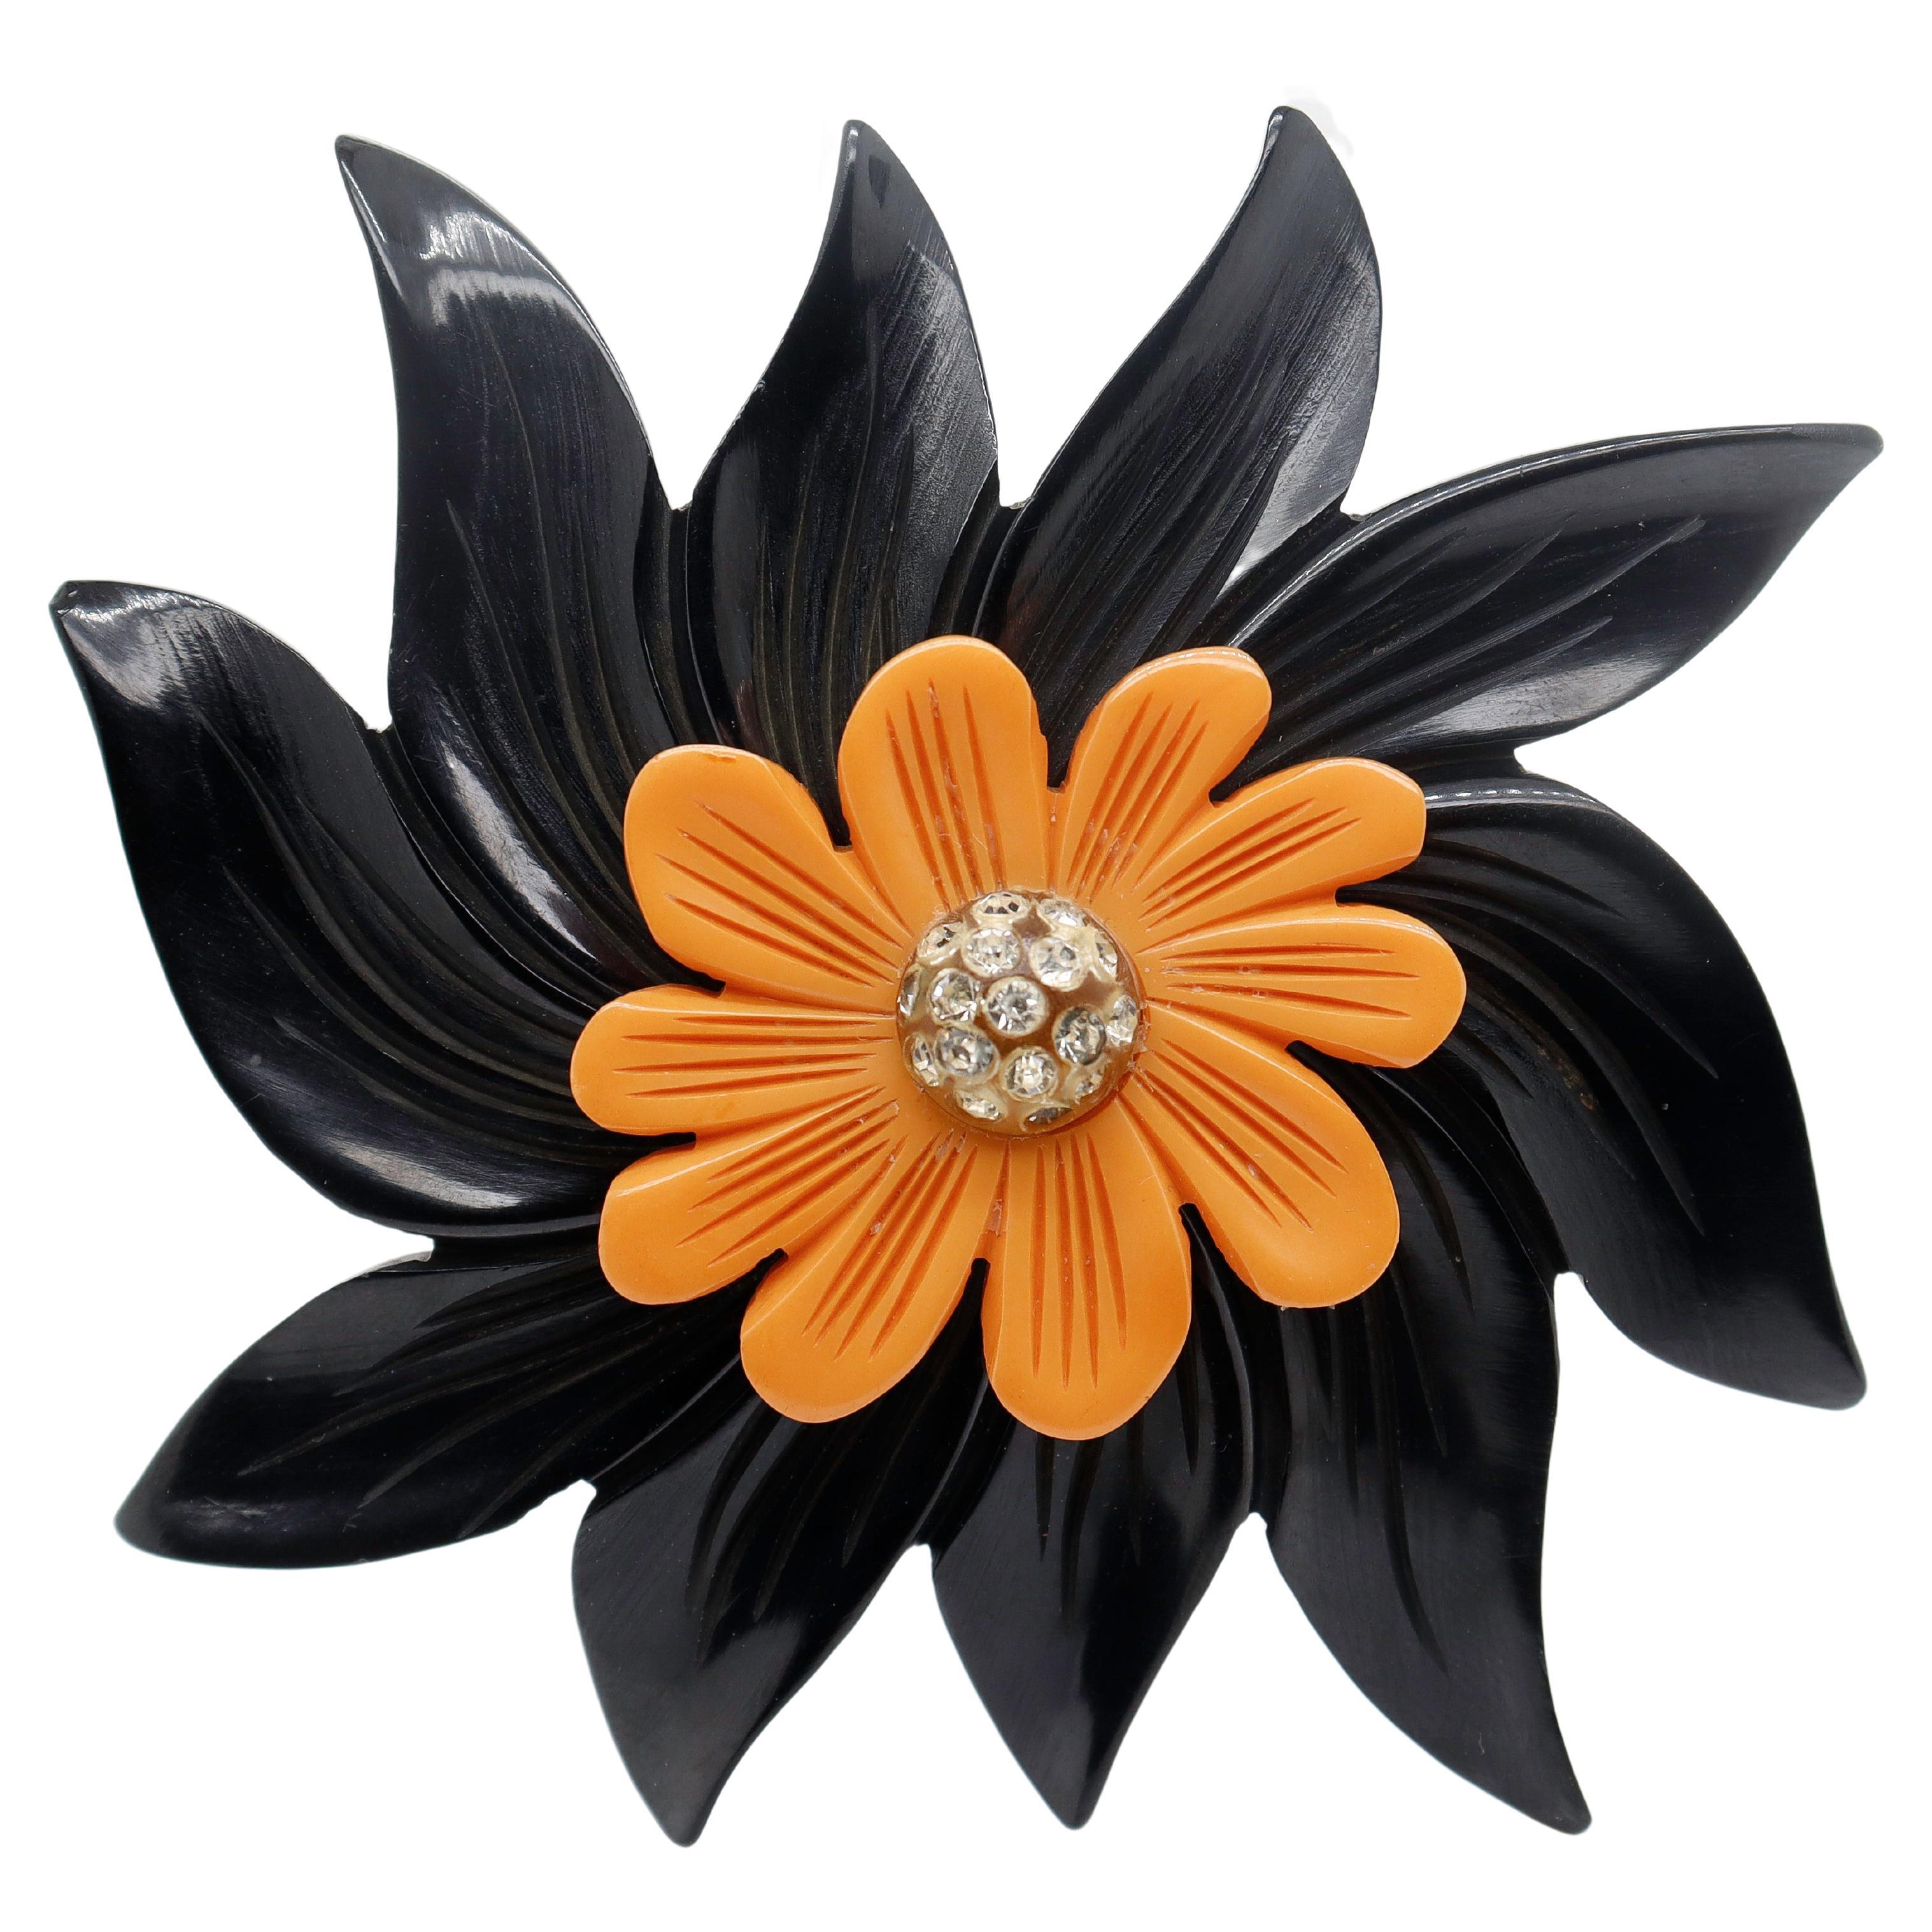 2-Color Black & Orange Bakelite Flower Brooch or Pin with Rhinestones